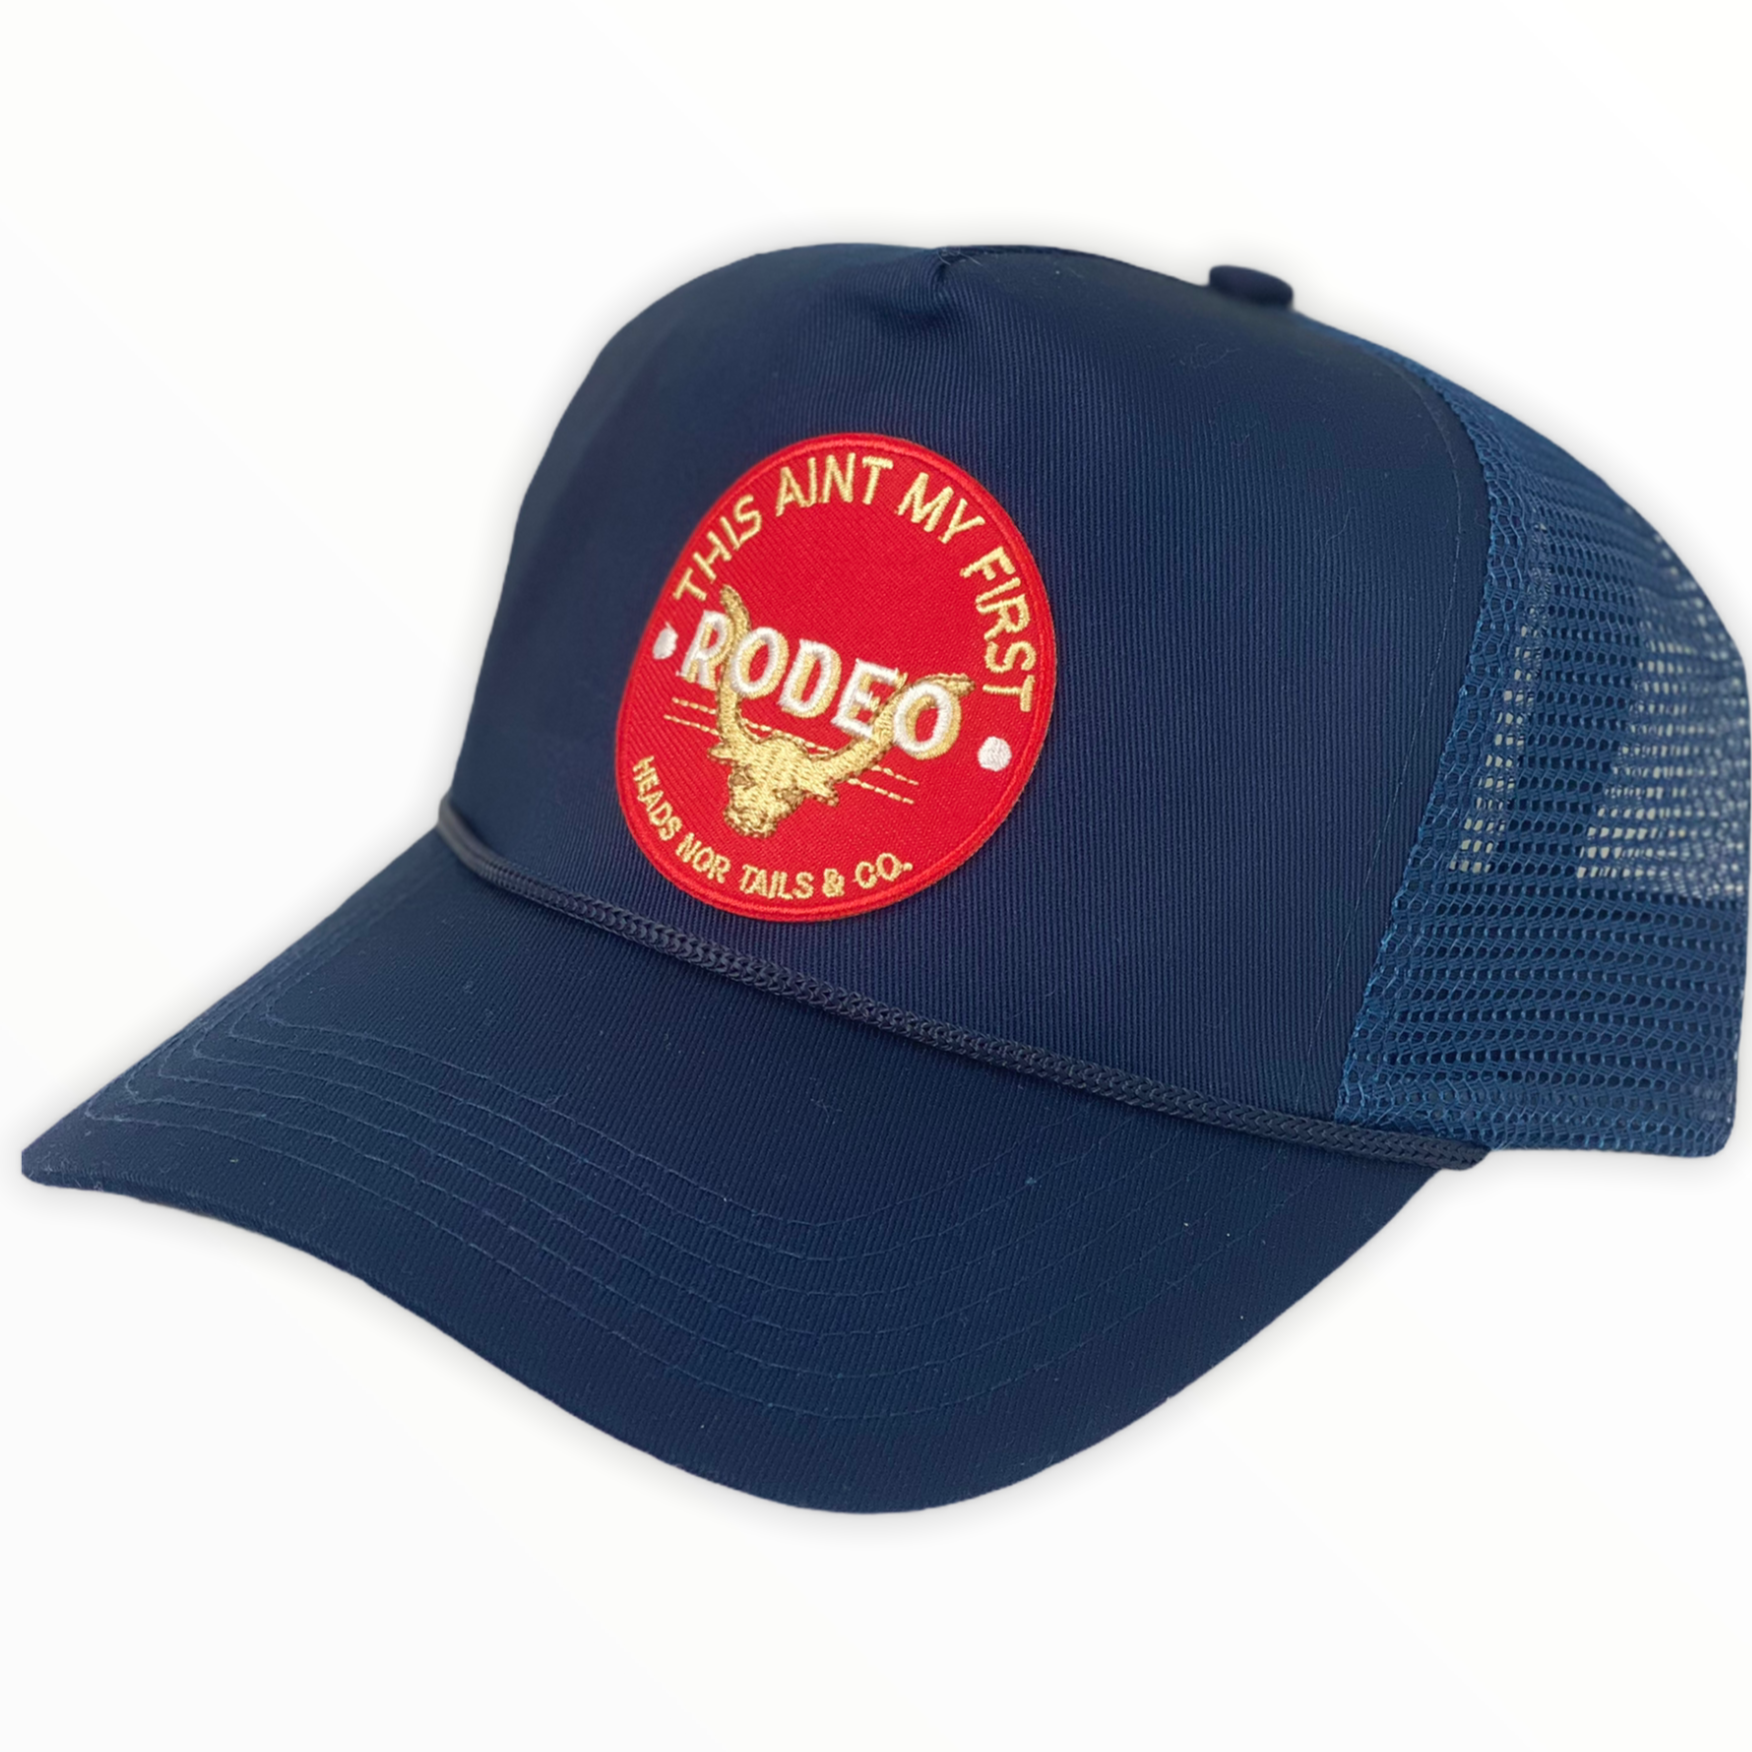 Best Caps For Men - Navy Rodeo Trucker Hat